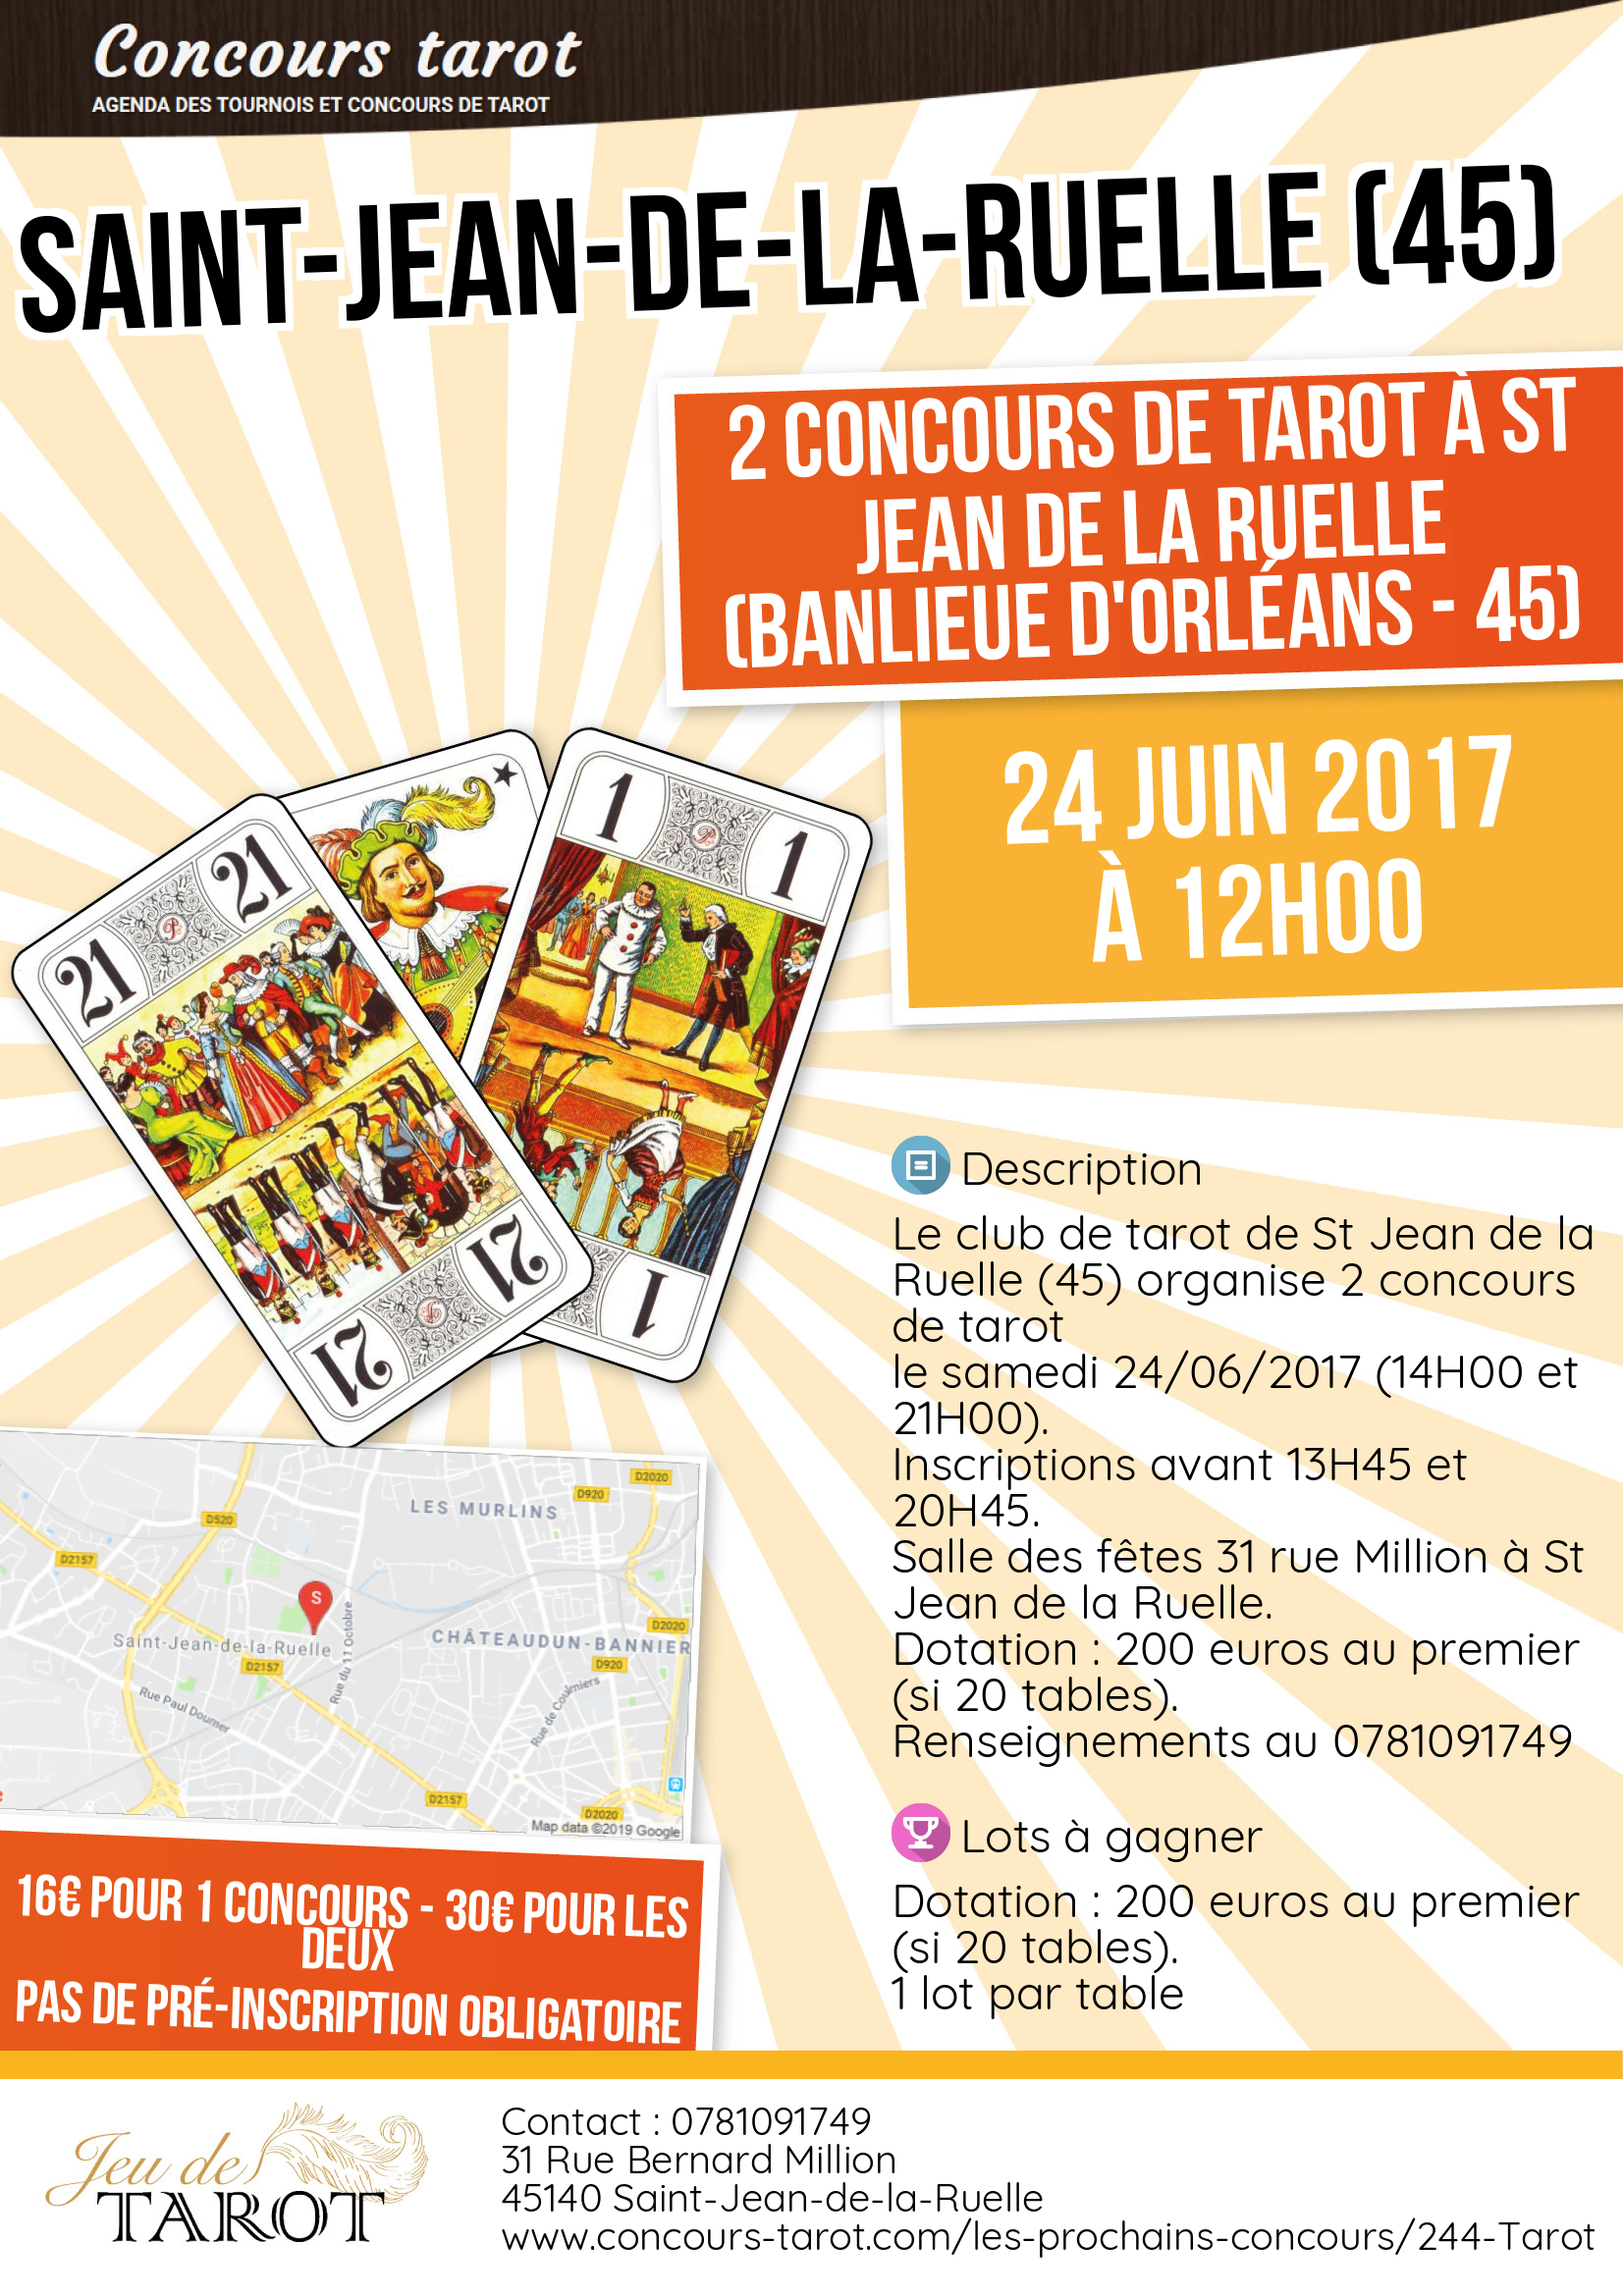 2 Concours de tarot a St Jean de la Ruelle banlieue d Orleans  45